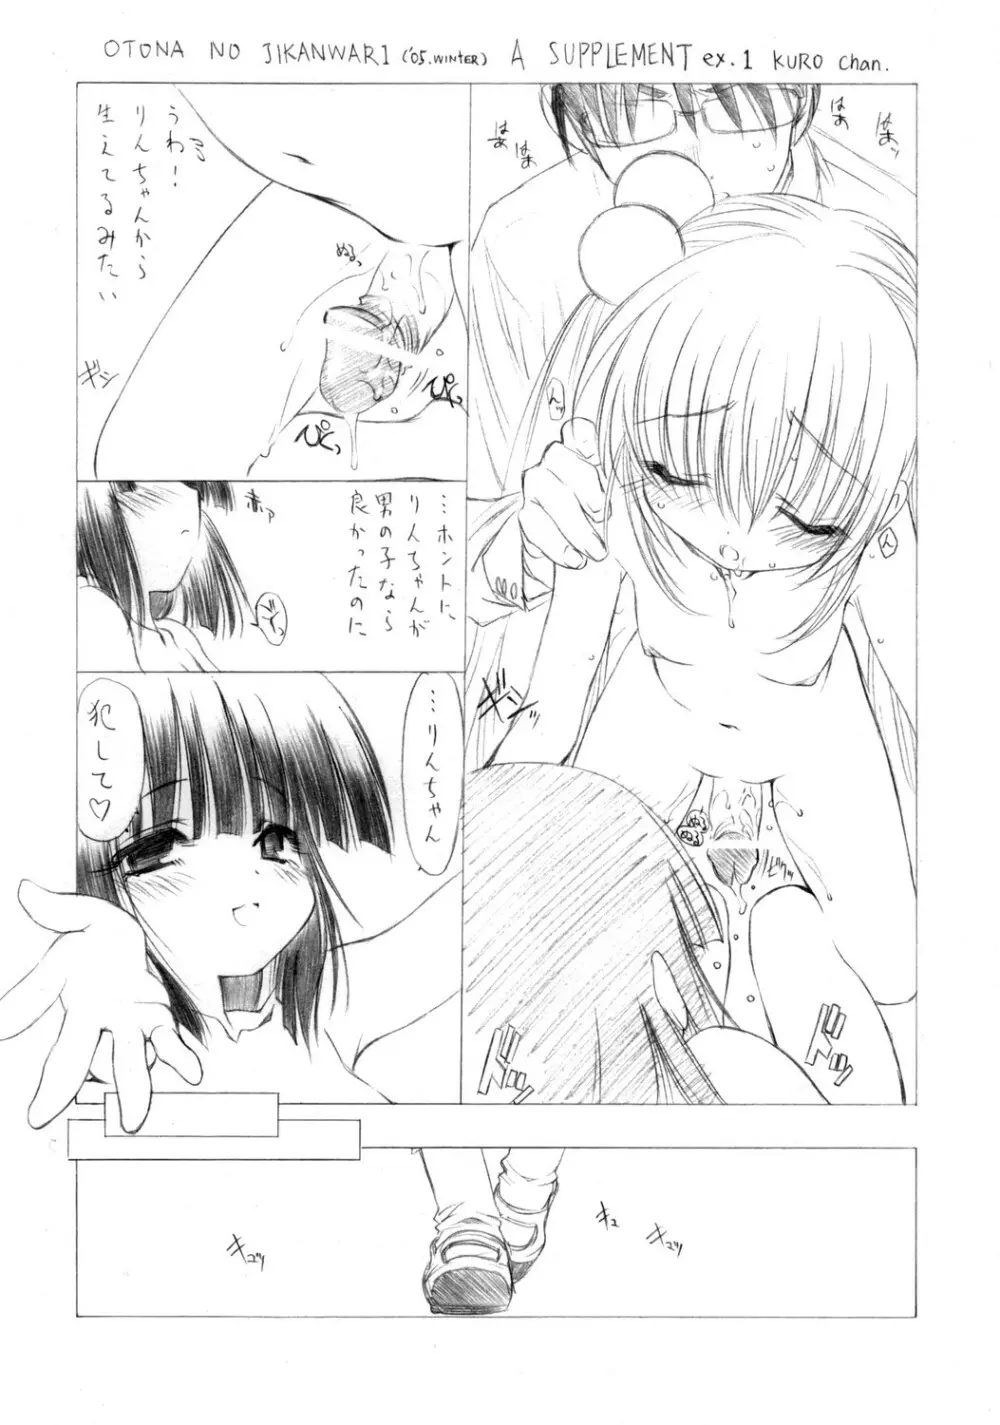 (ぷにケット 13)[UROBOROS] OTONA NO JIKANWARI ('05.winter) A SUPPLEMENT ex.1 KURO chan (こどものじかん) Page.1